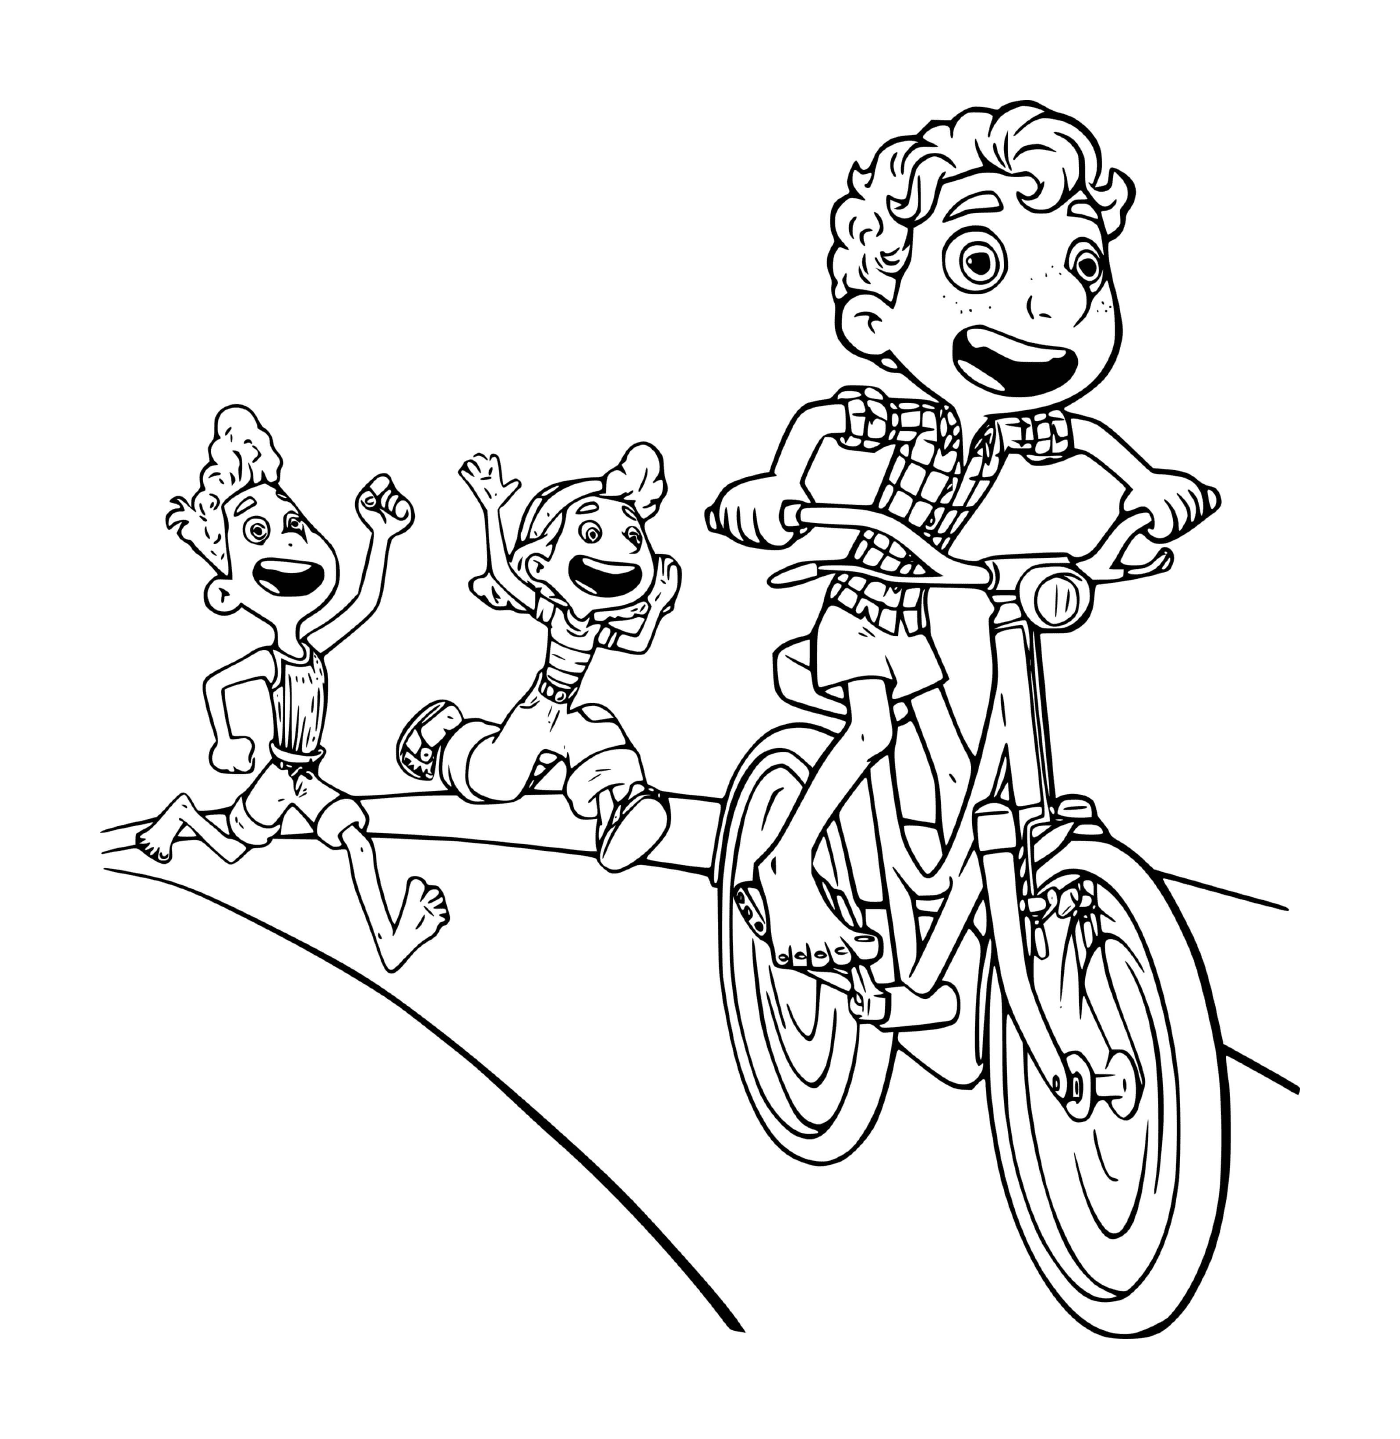  Junge auf einem Fahrrad 